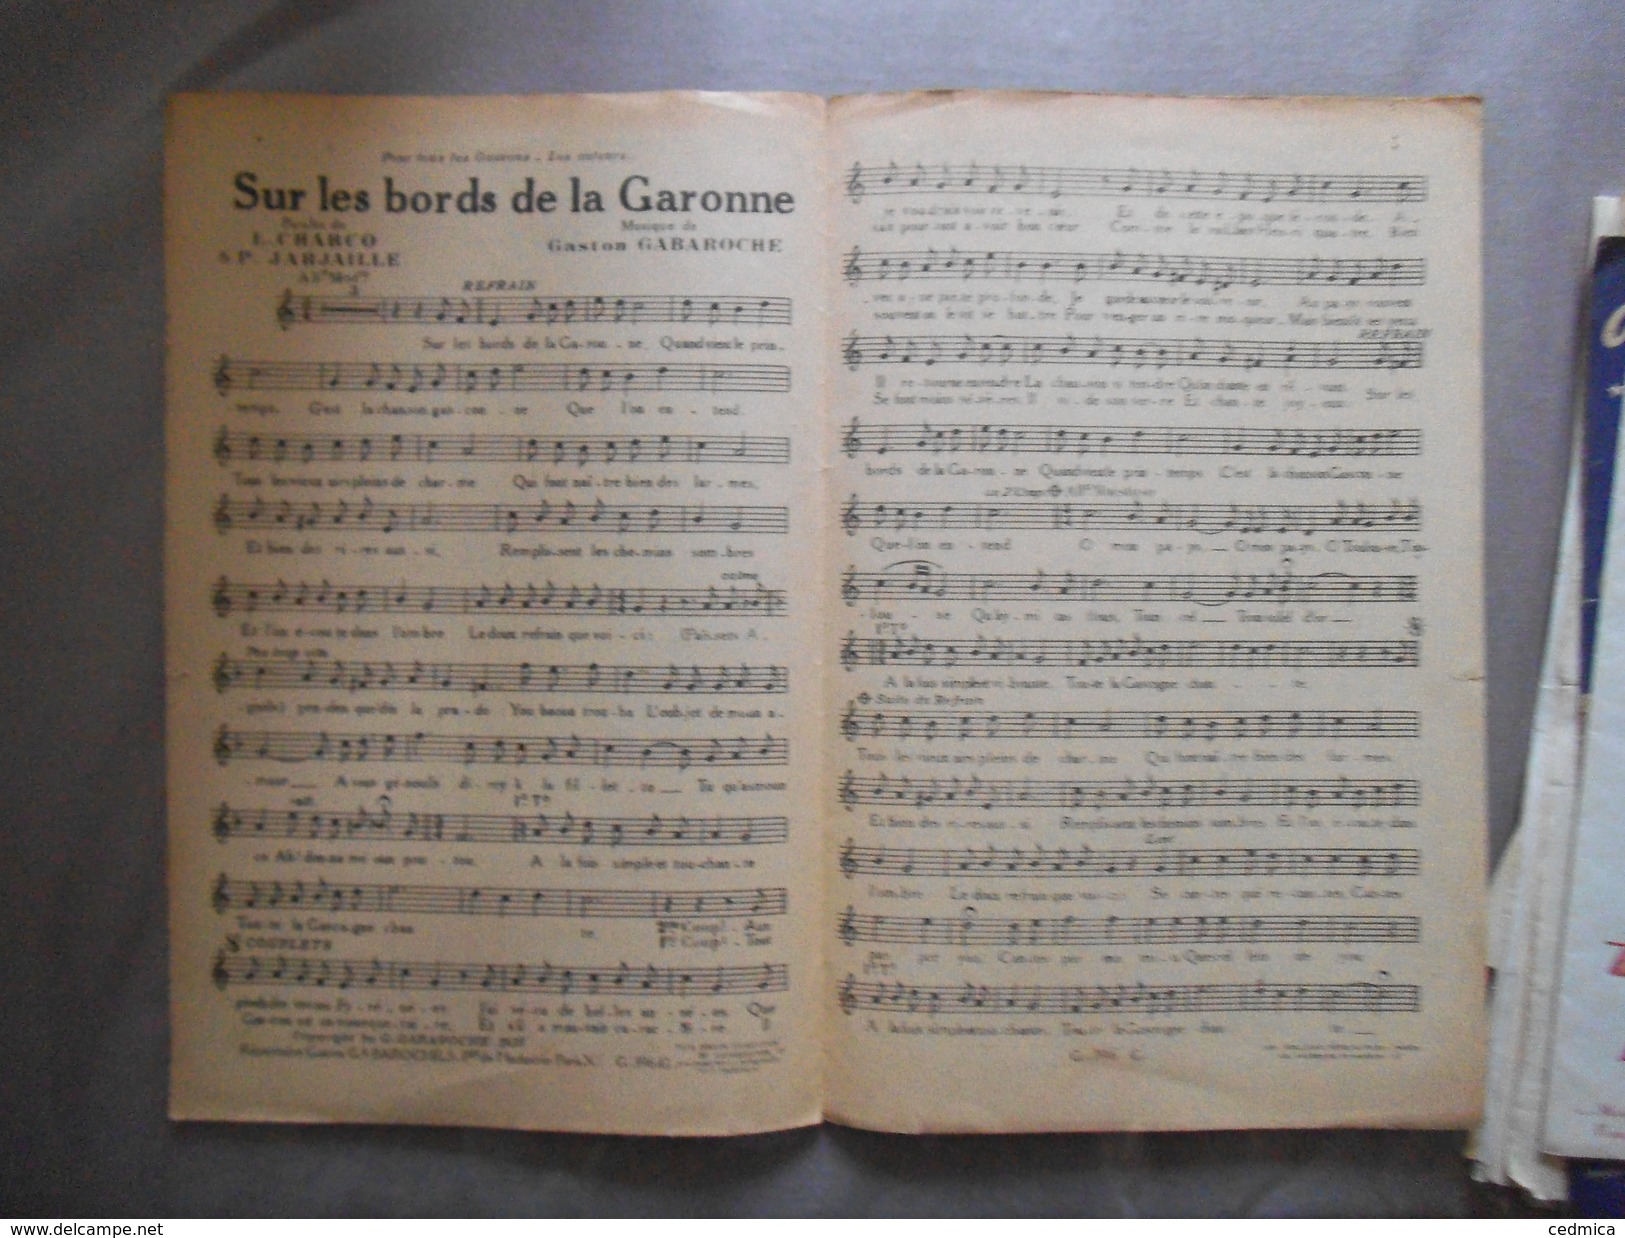 SUR LES BORDS DE LA GARONNE PAROLES DE L.CHARCO & P.JARJAILLE MUSIQUE DE GASTON GABAROCHE 1935 - Noten & Partituren